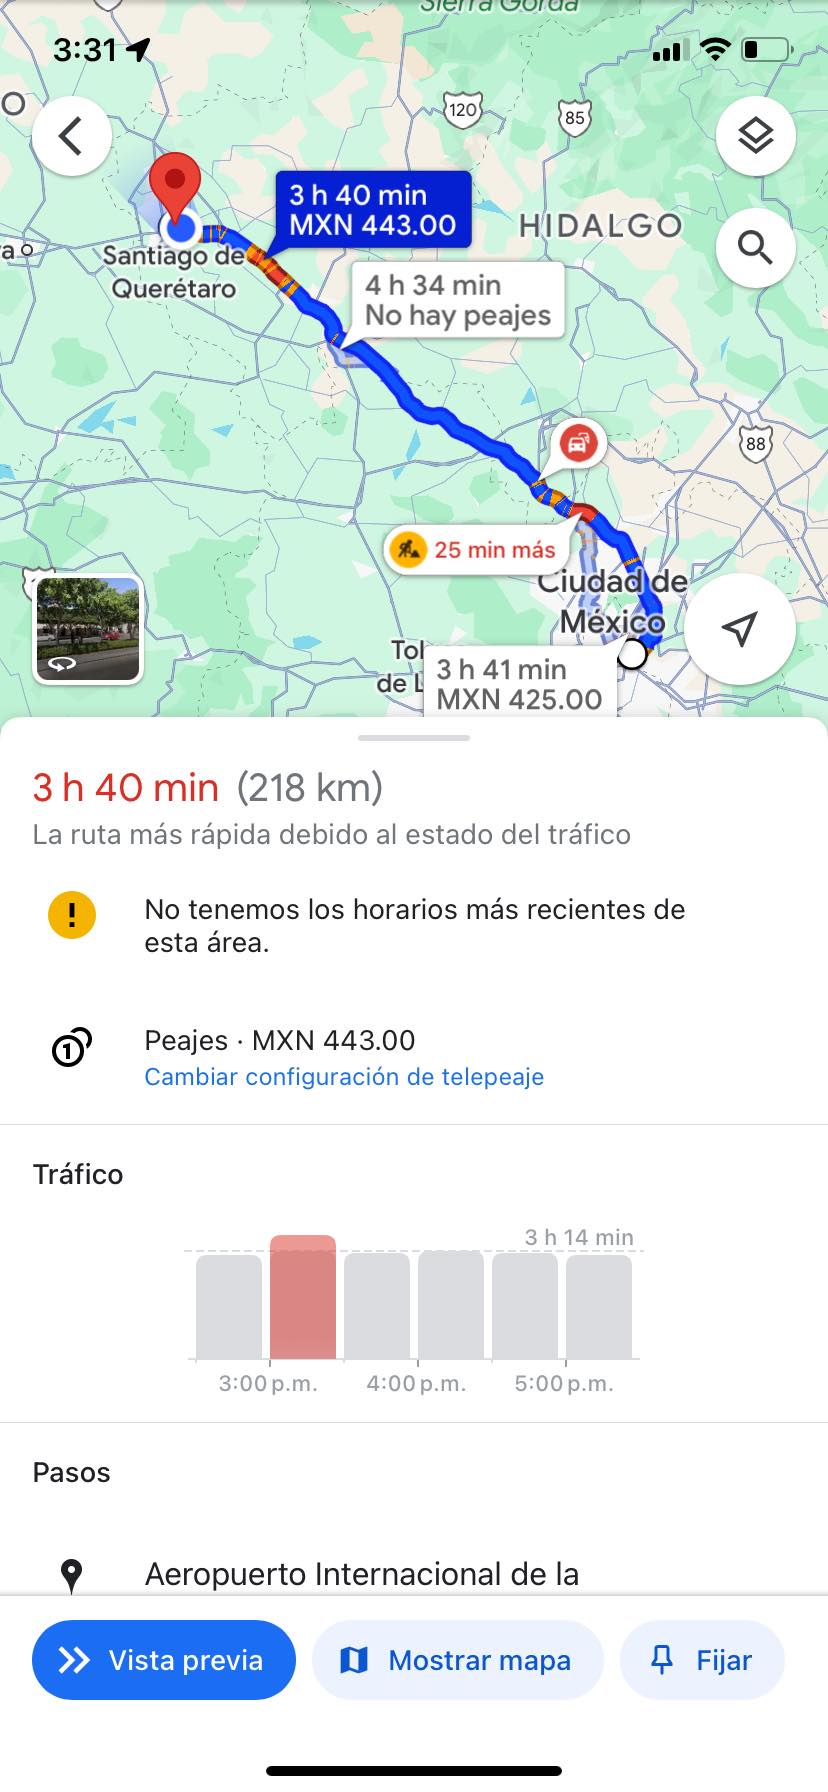 ¿Cómo llegar del Aeropuerto Internacional de la Ciudad de México a Querétaro?